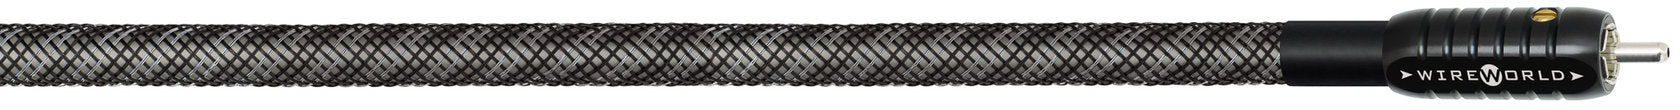 WireWorld Silver Eclipse 8 RCA intermediate cable, 1 m